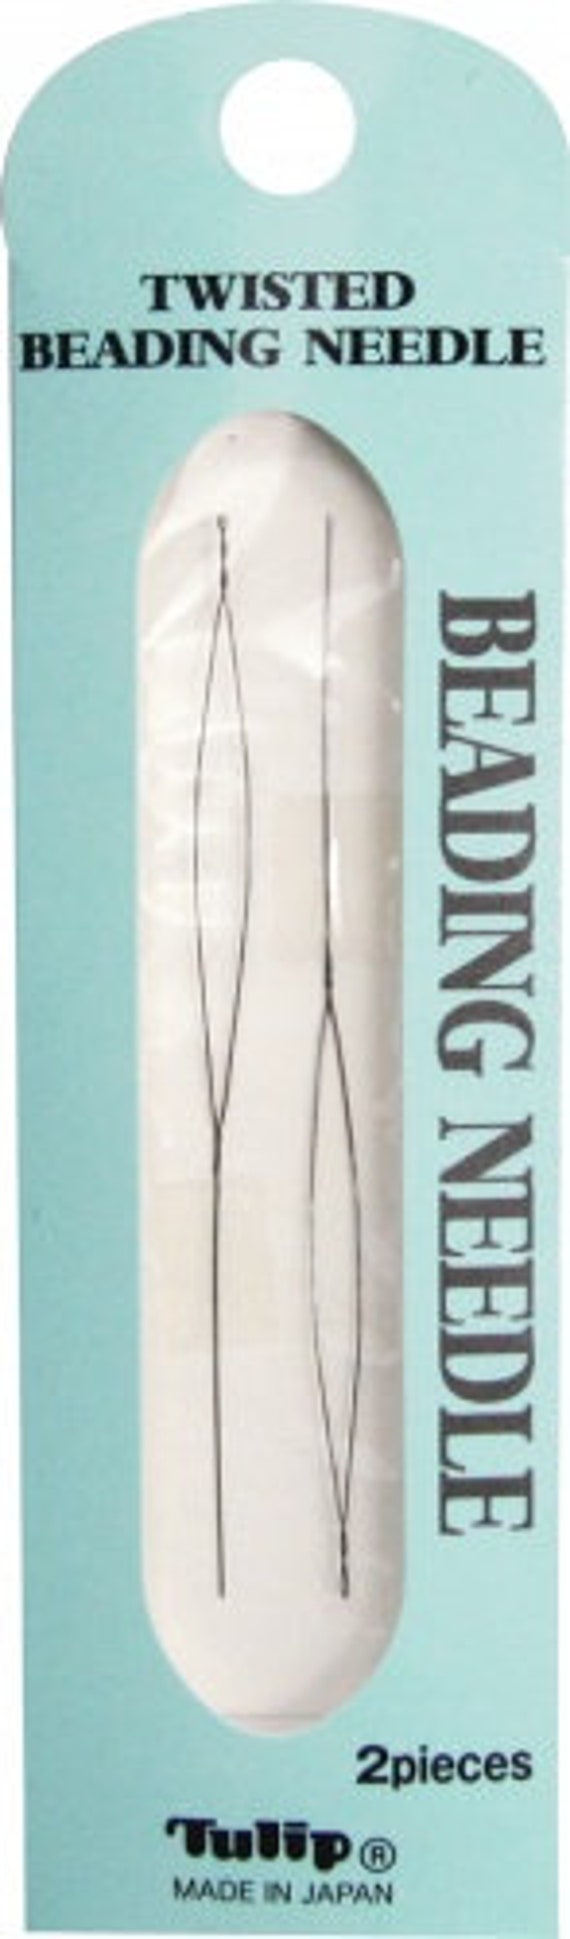 TULIP Twisted Beading Needle -120x0.2mm Long